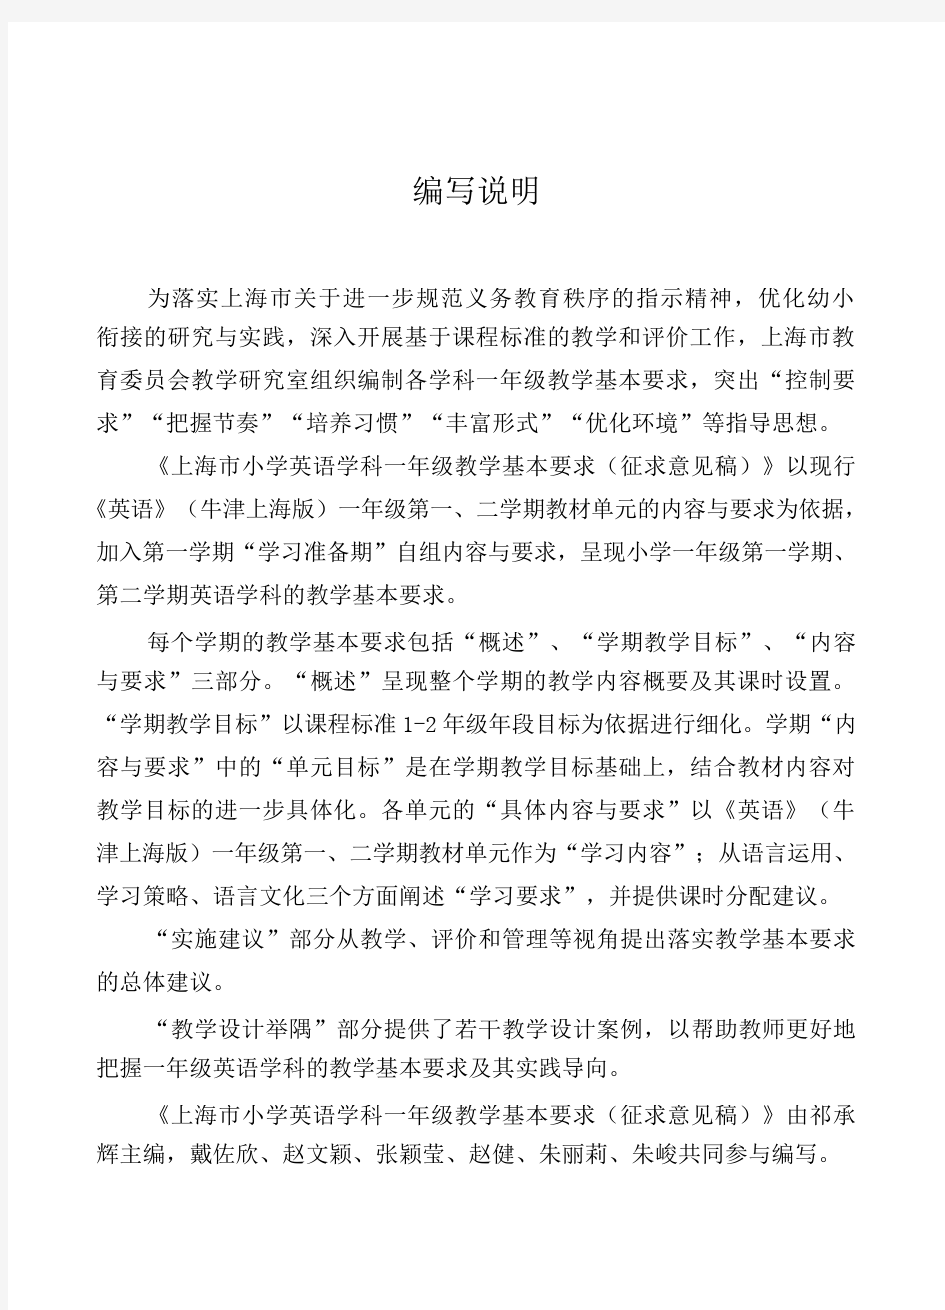 上海小学英语一年级学科基本要求